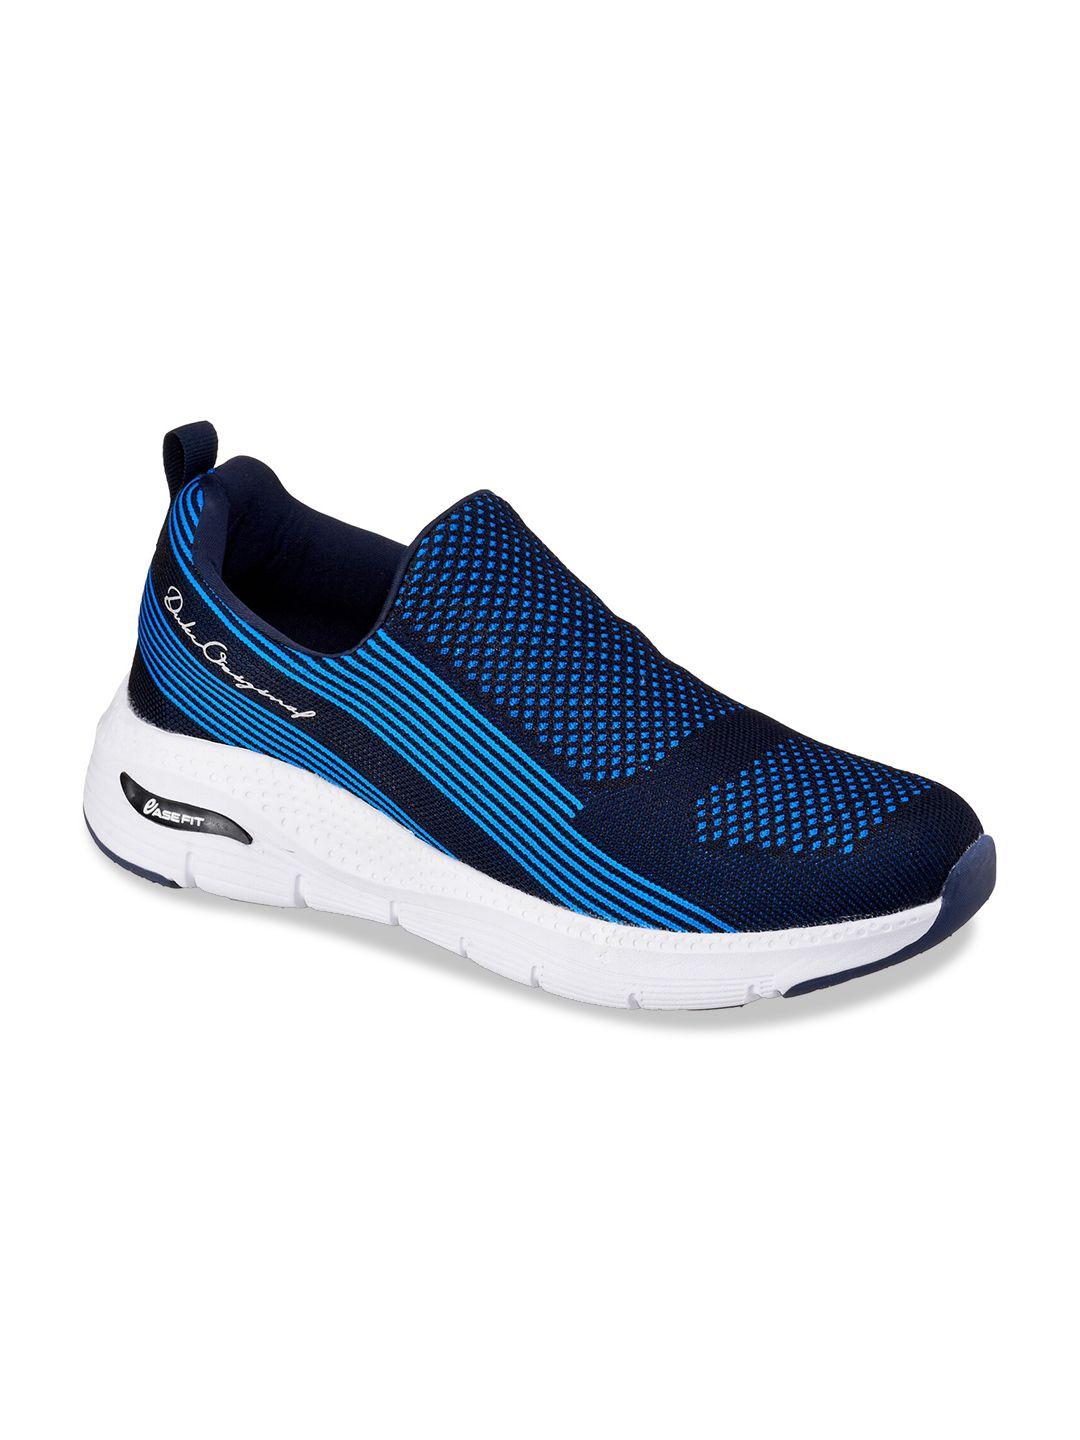 duke-men-navy-blue-textile-running-shoes